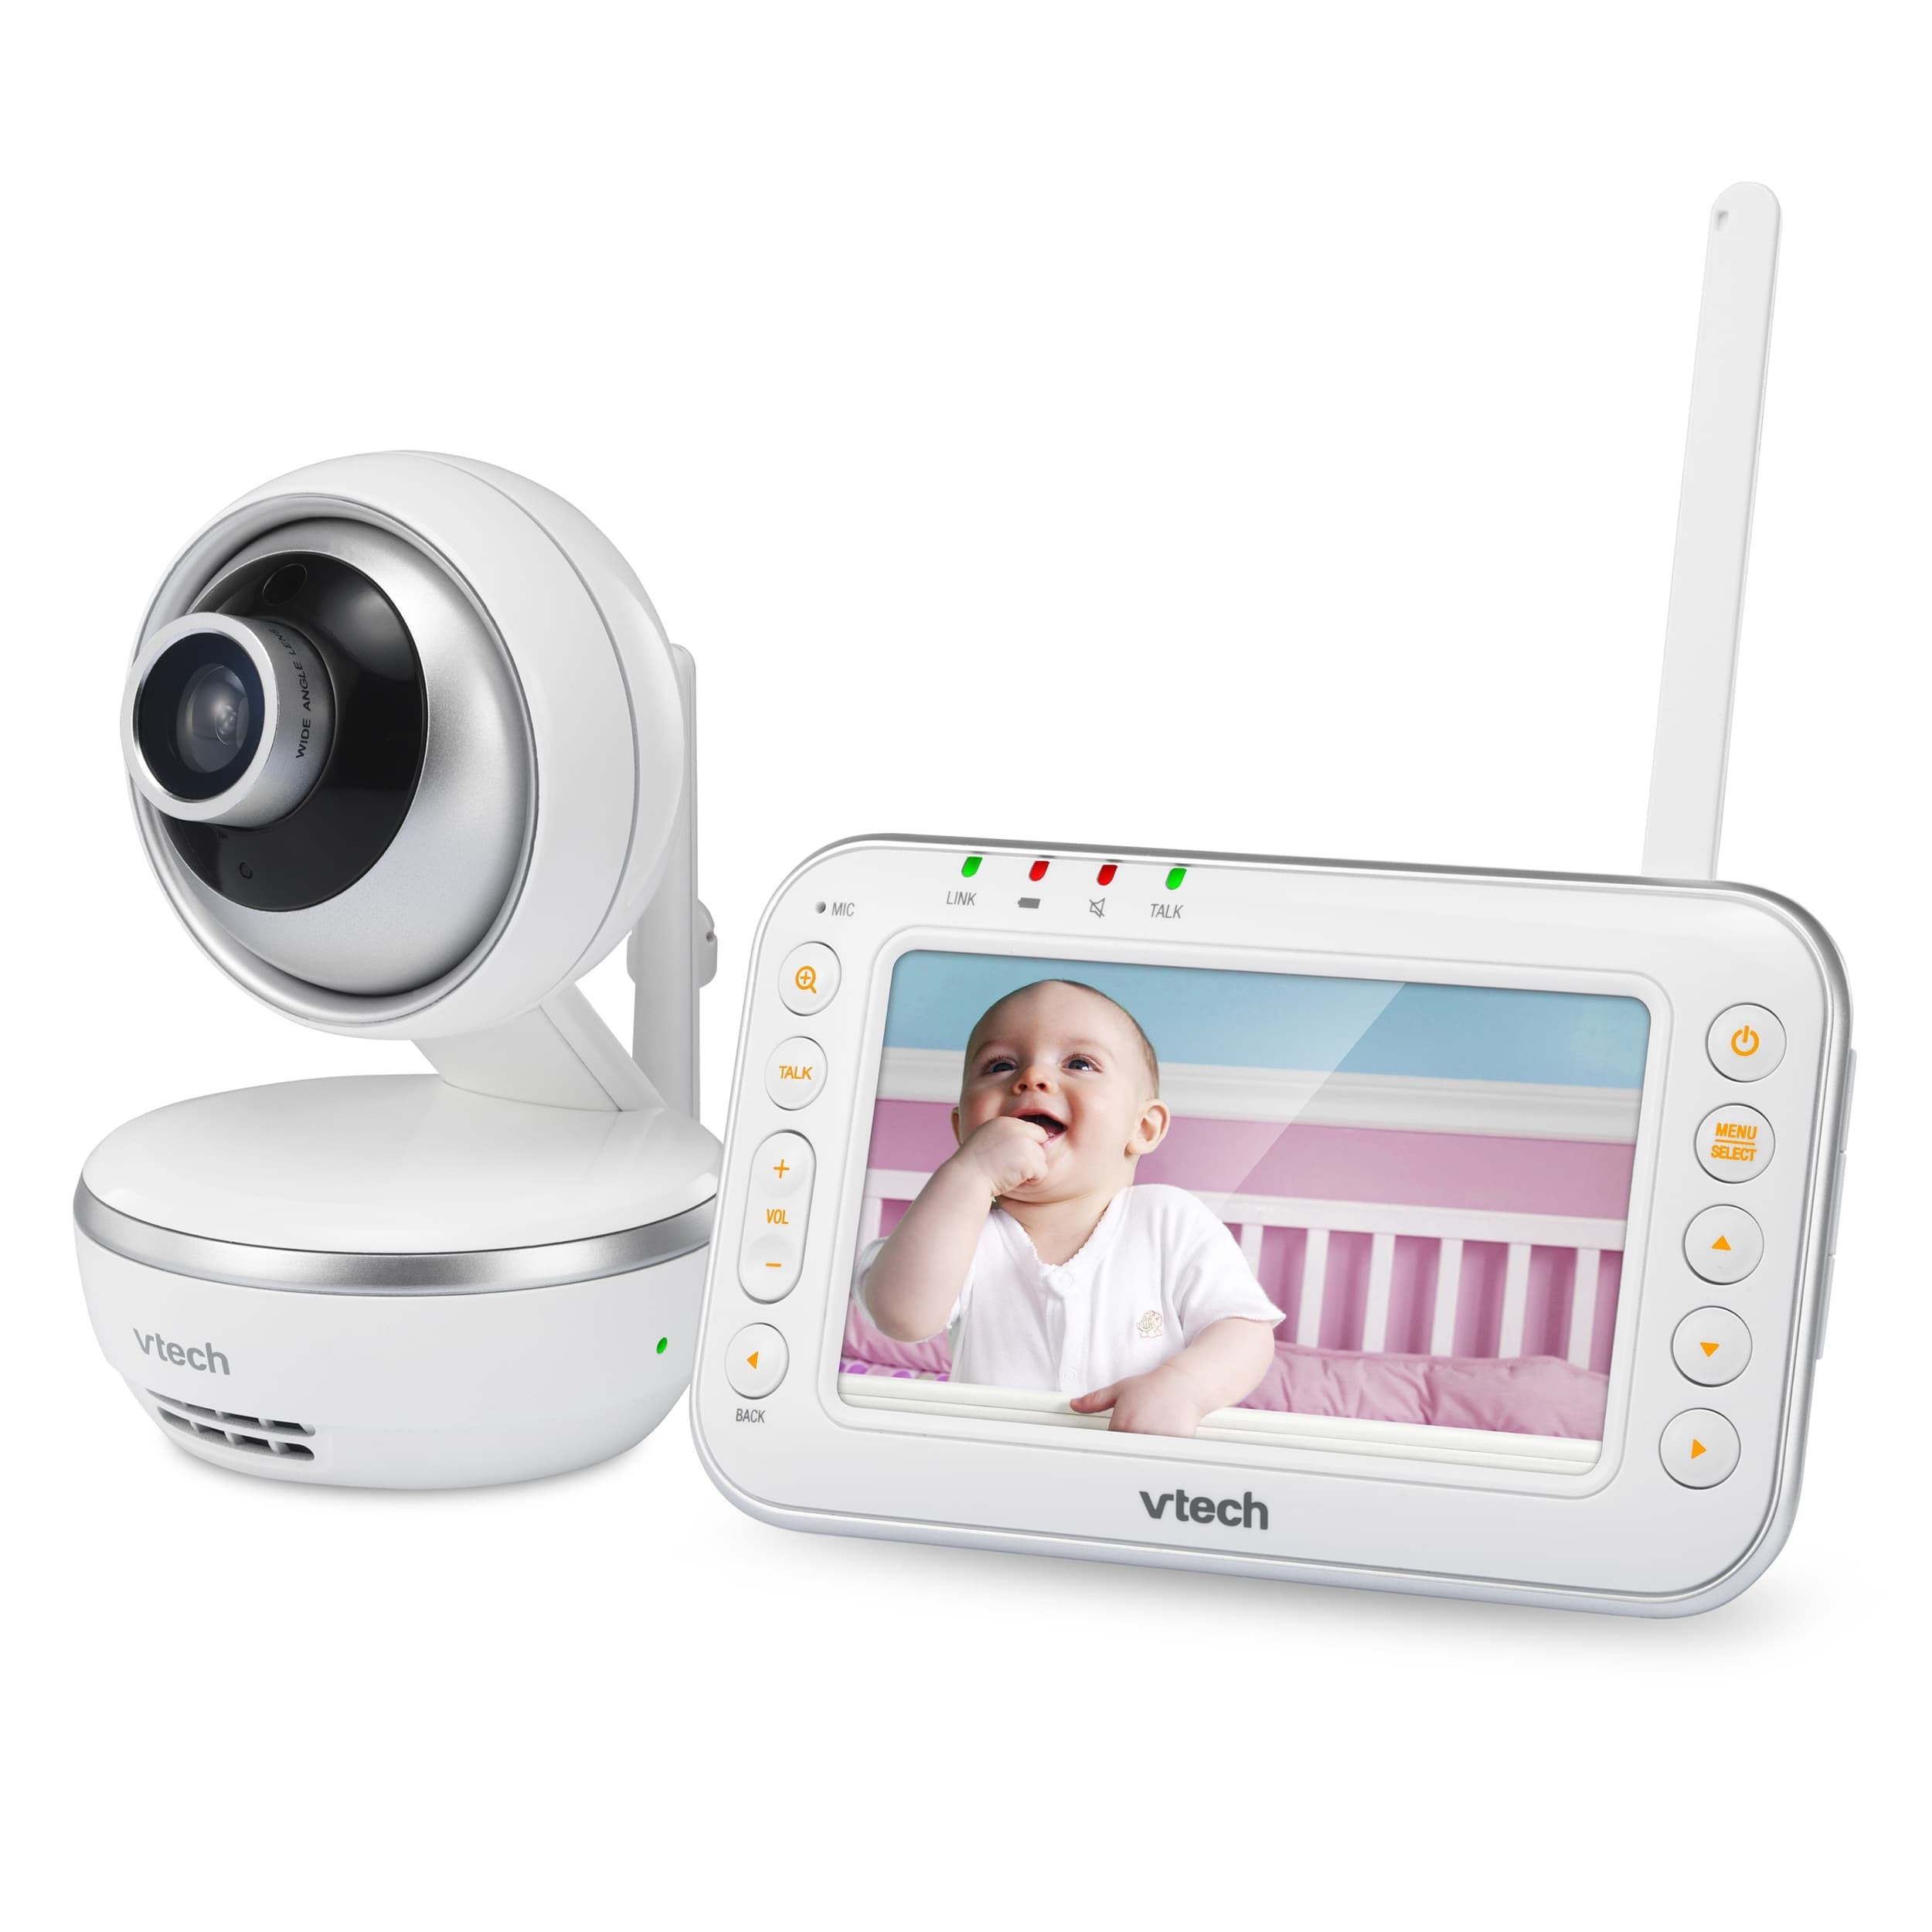 Vtech VM4261 Digital Video Baby Monitor with Pan & Tilt Camera